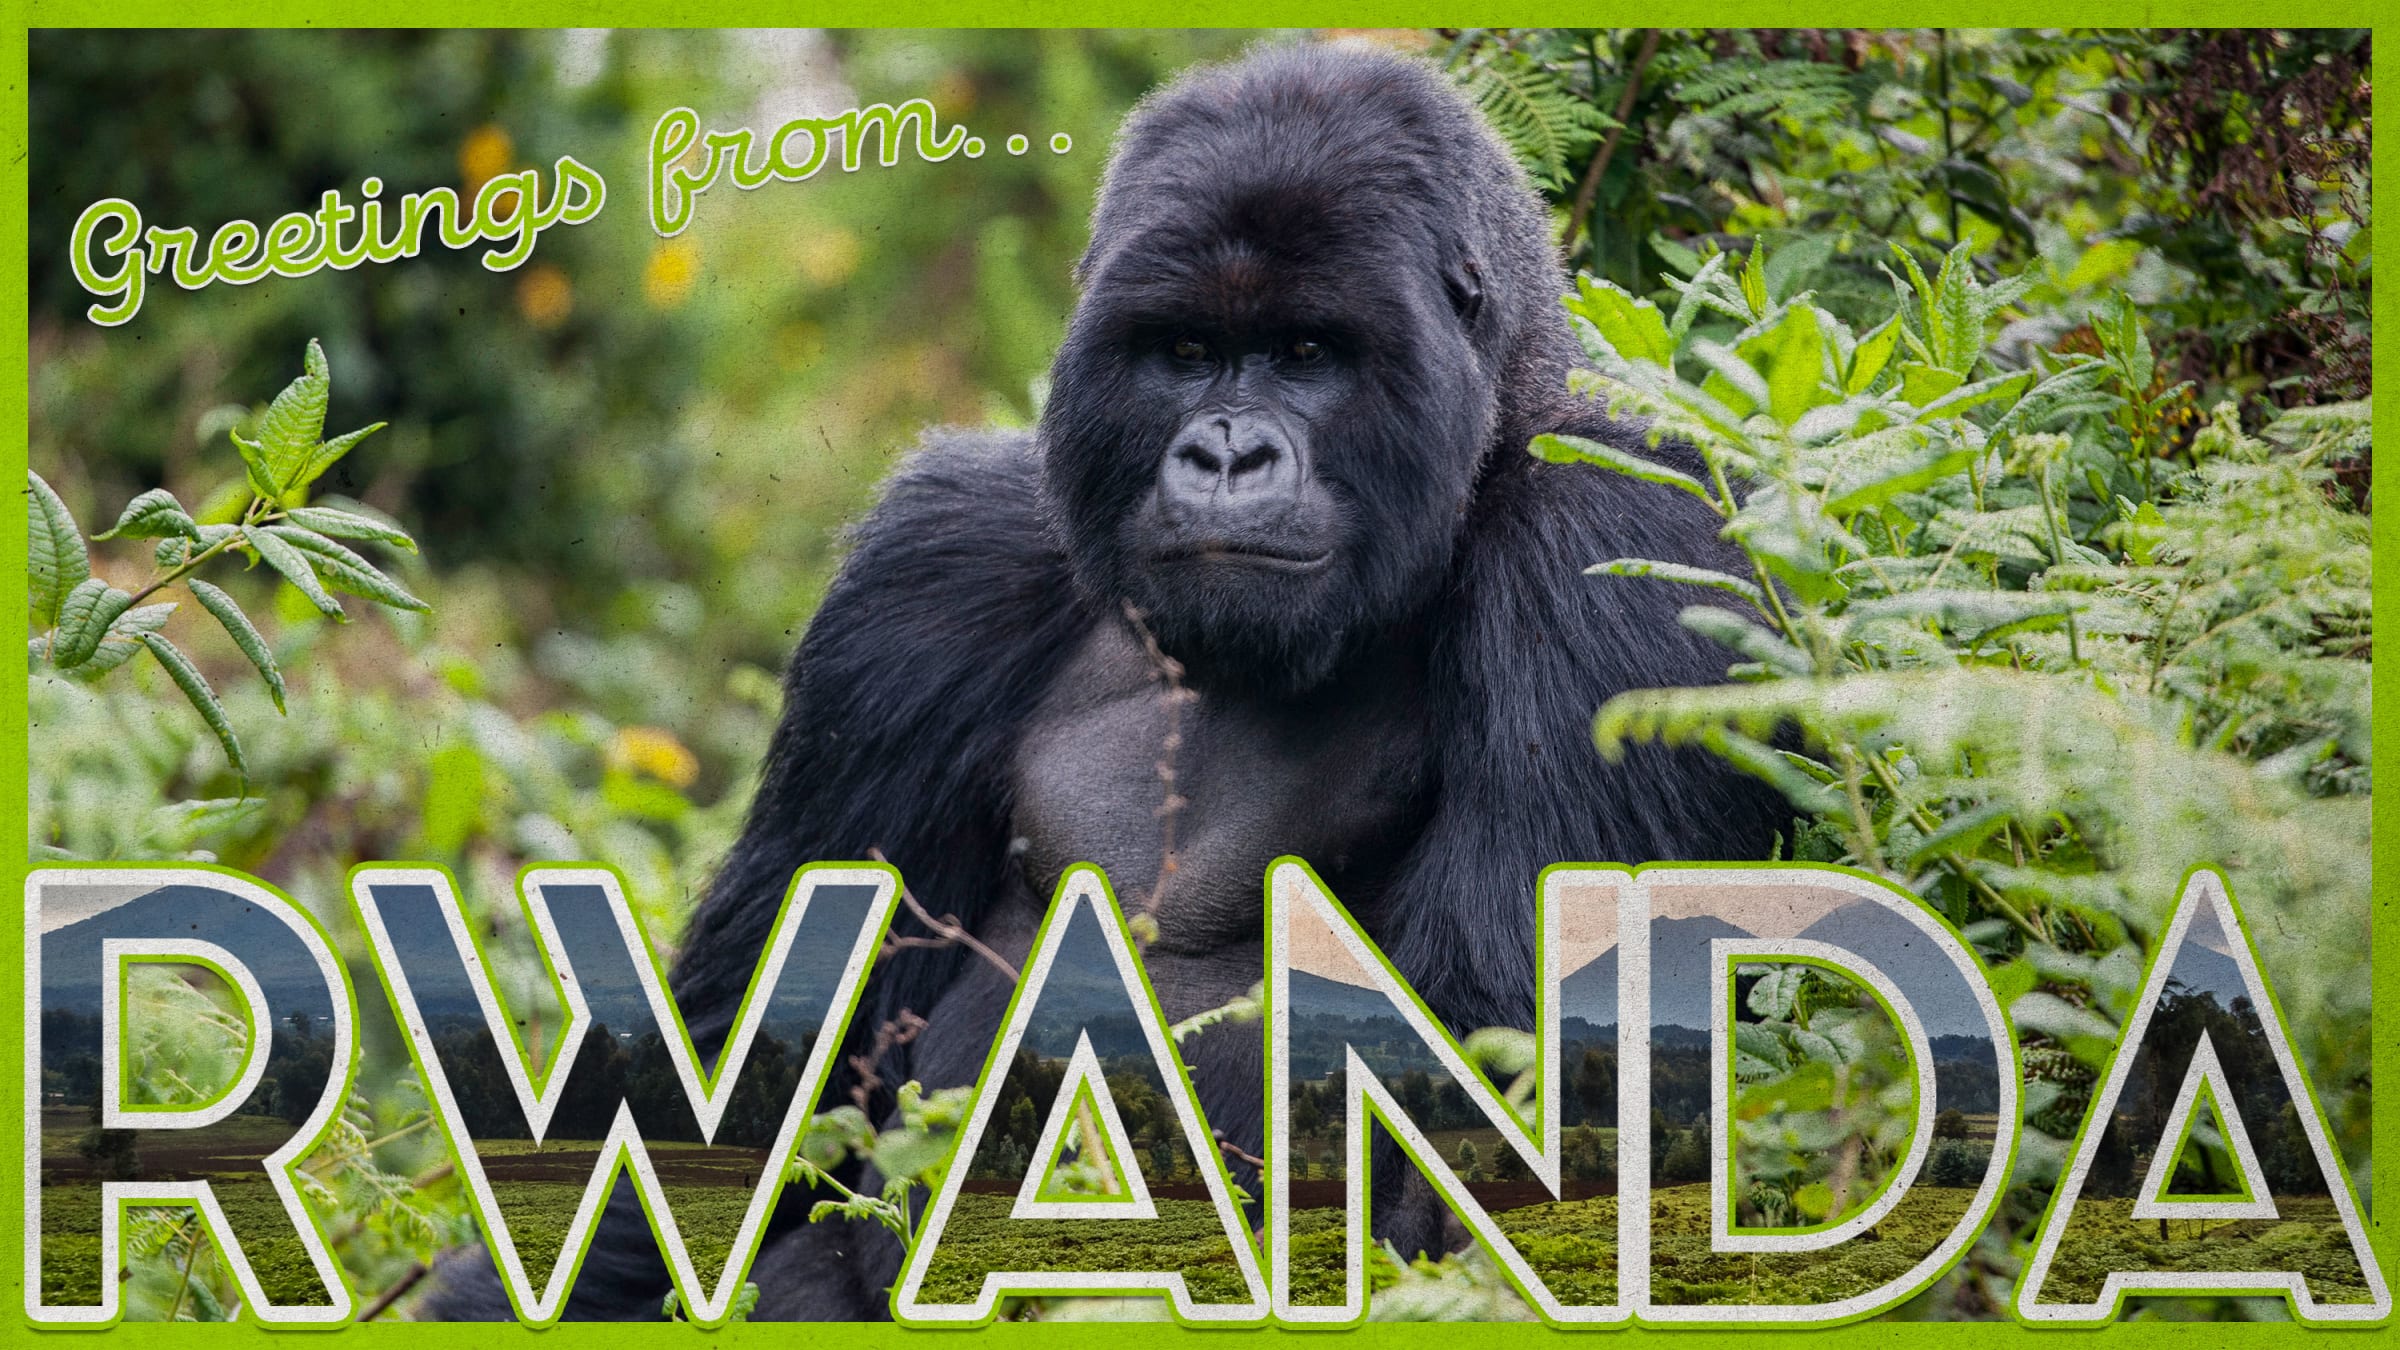 Rwanda Gorilla Image